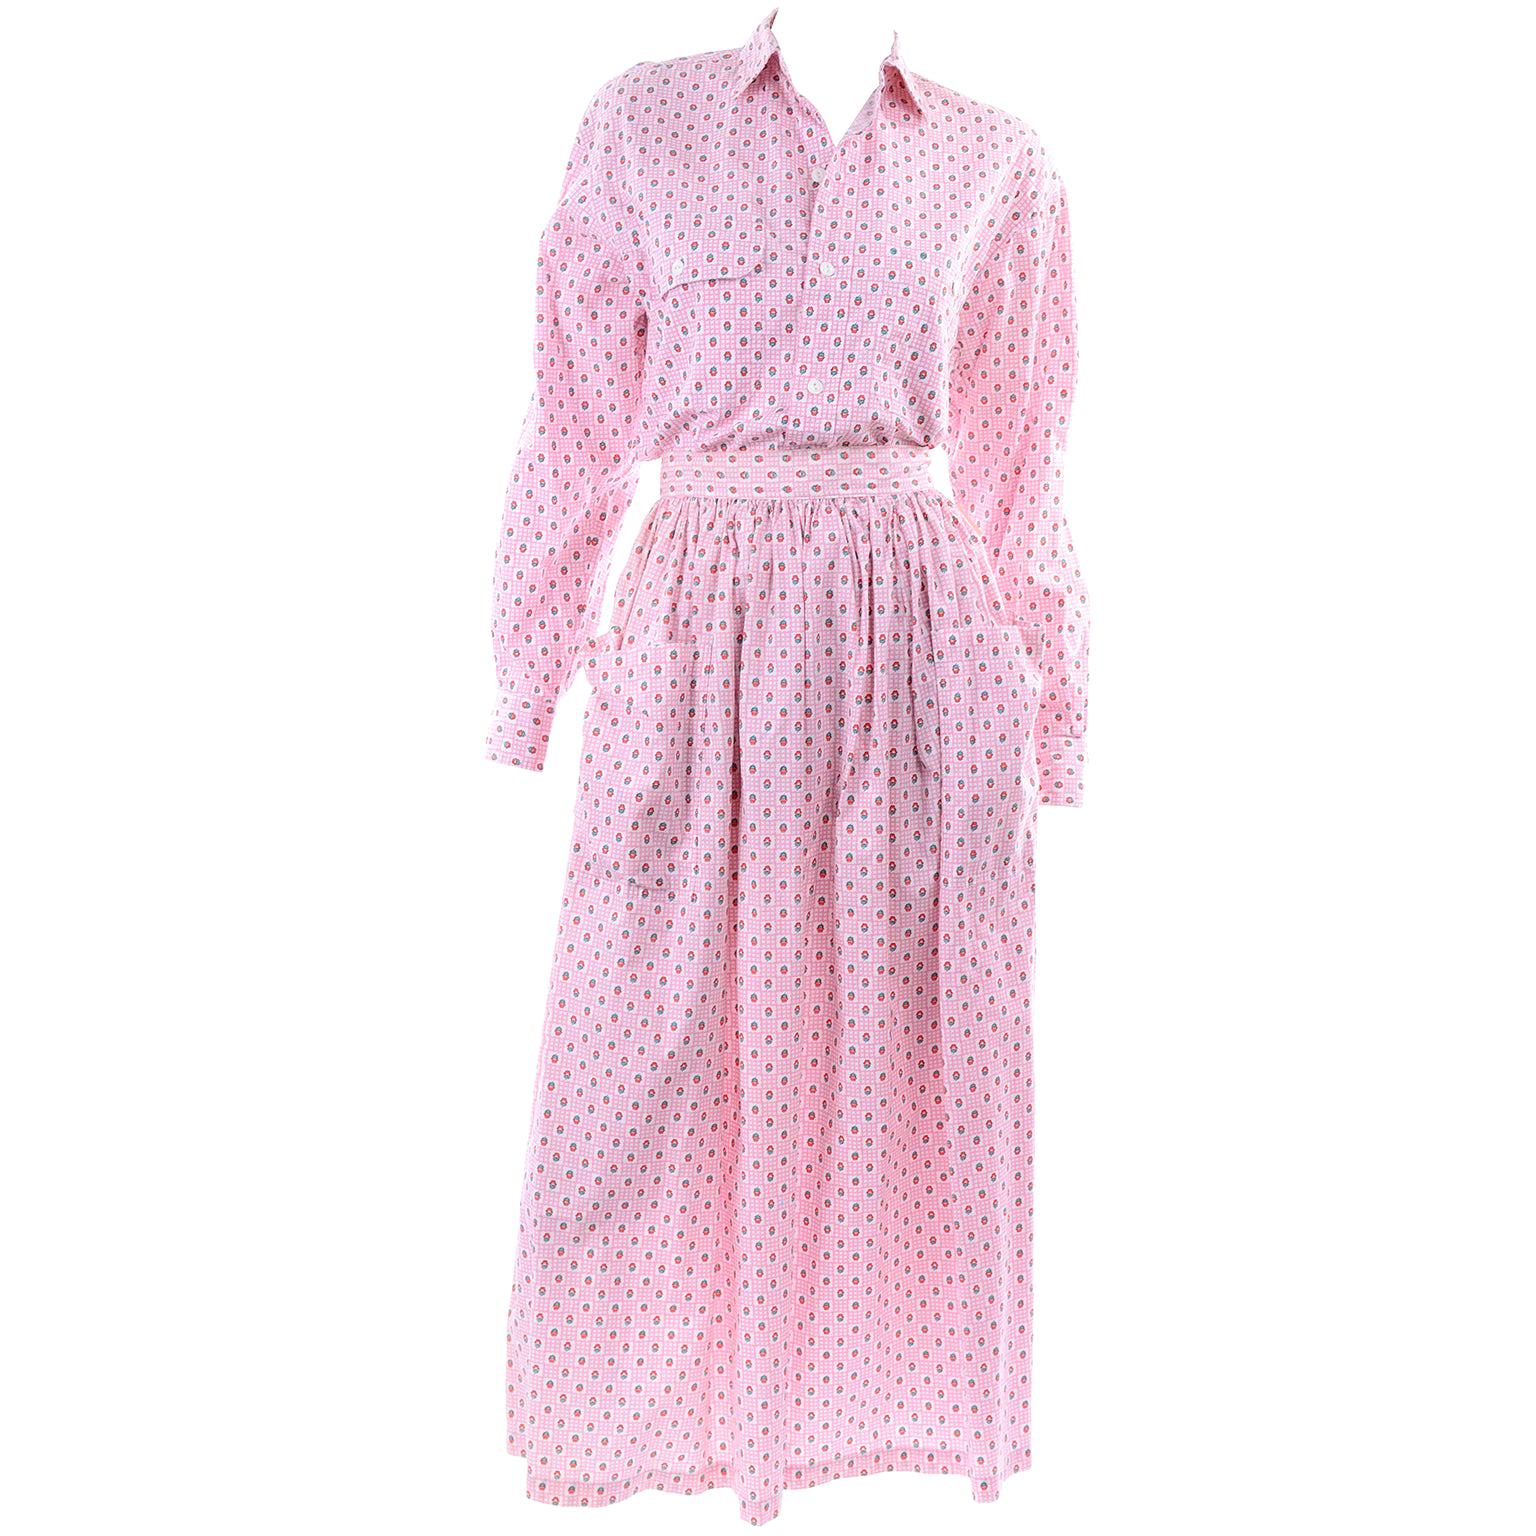 Ralph Lauren - Robe, jupe et chemisier à fleurs roses, 2 pièces, vintage, état neuf avec étiquette, avec étiquette